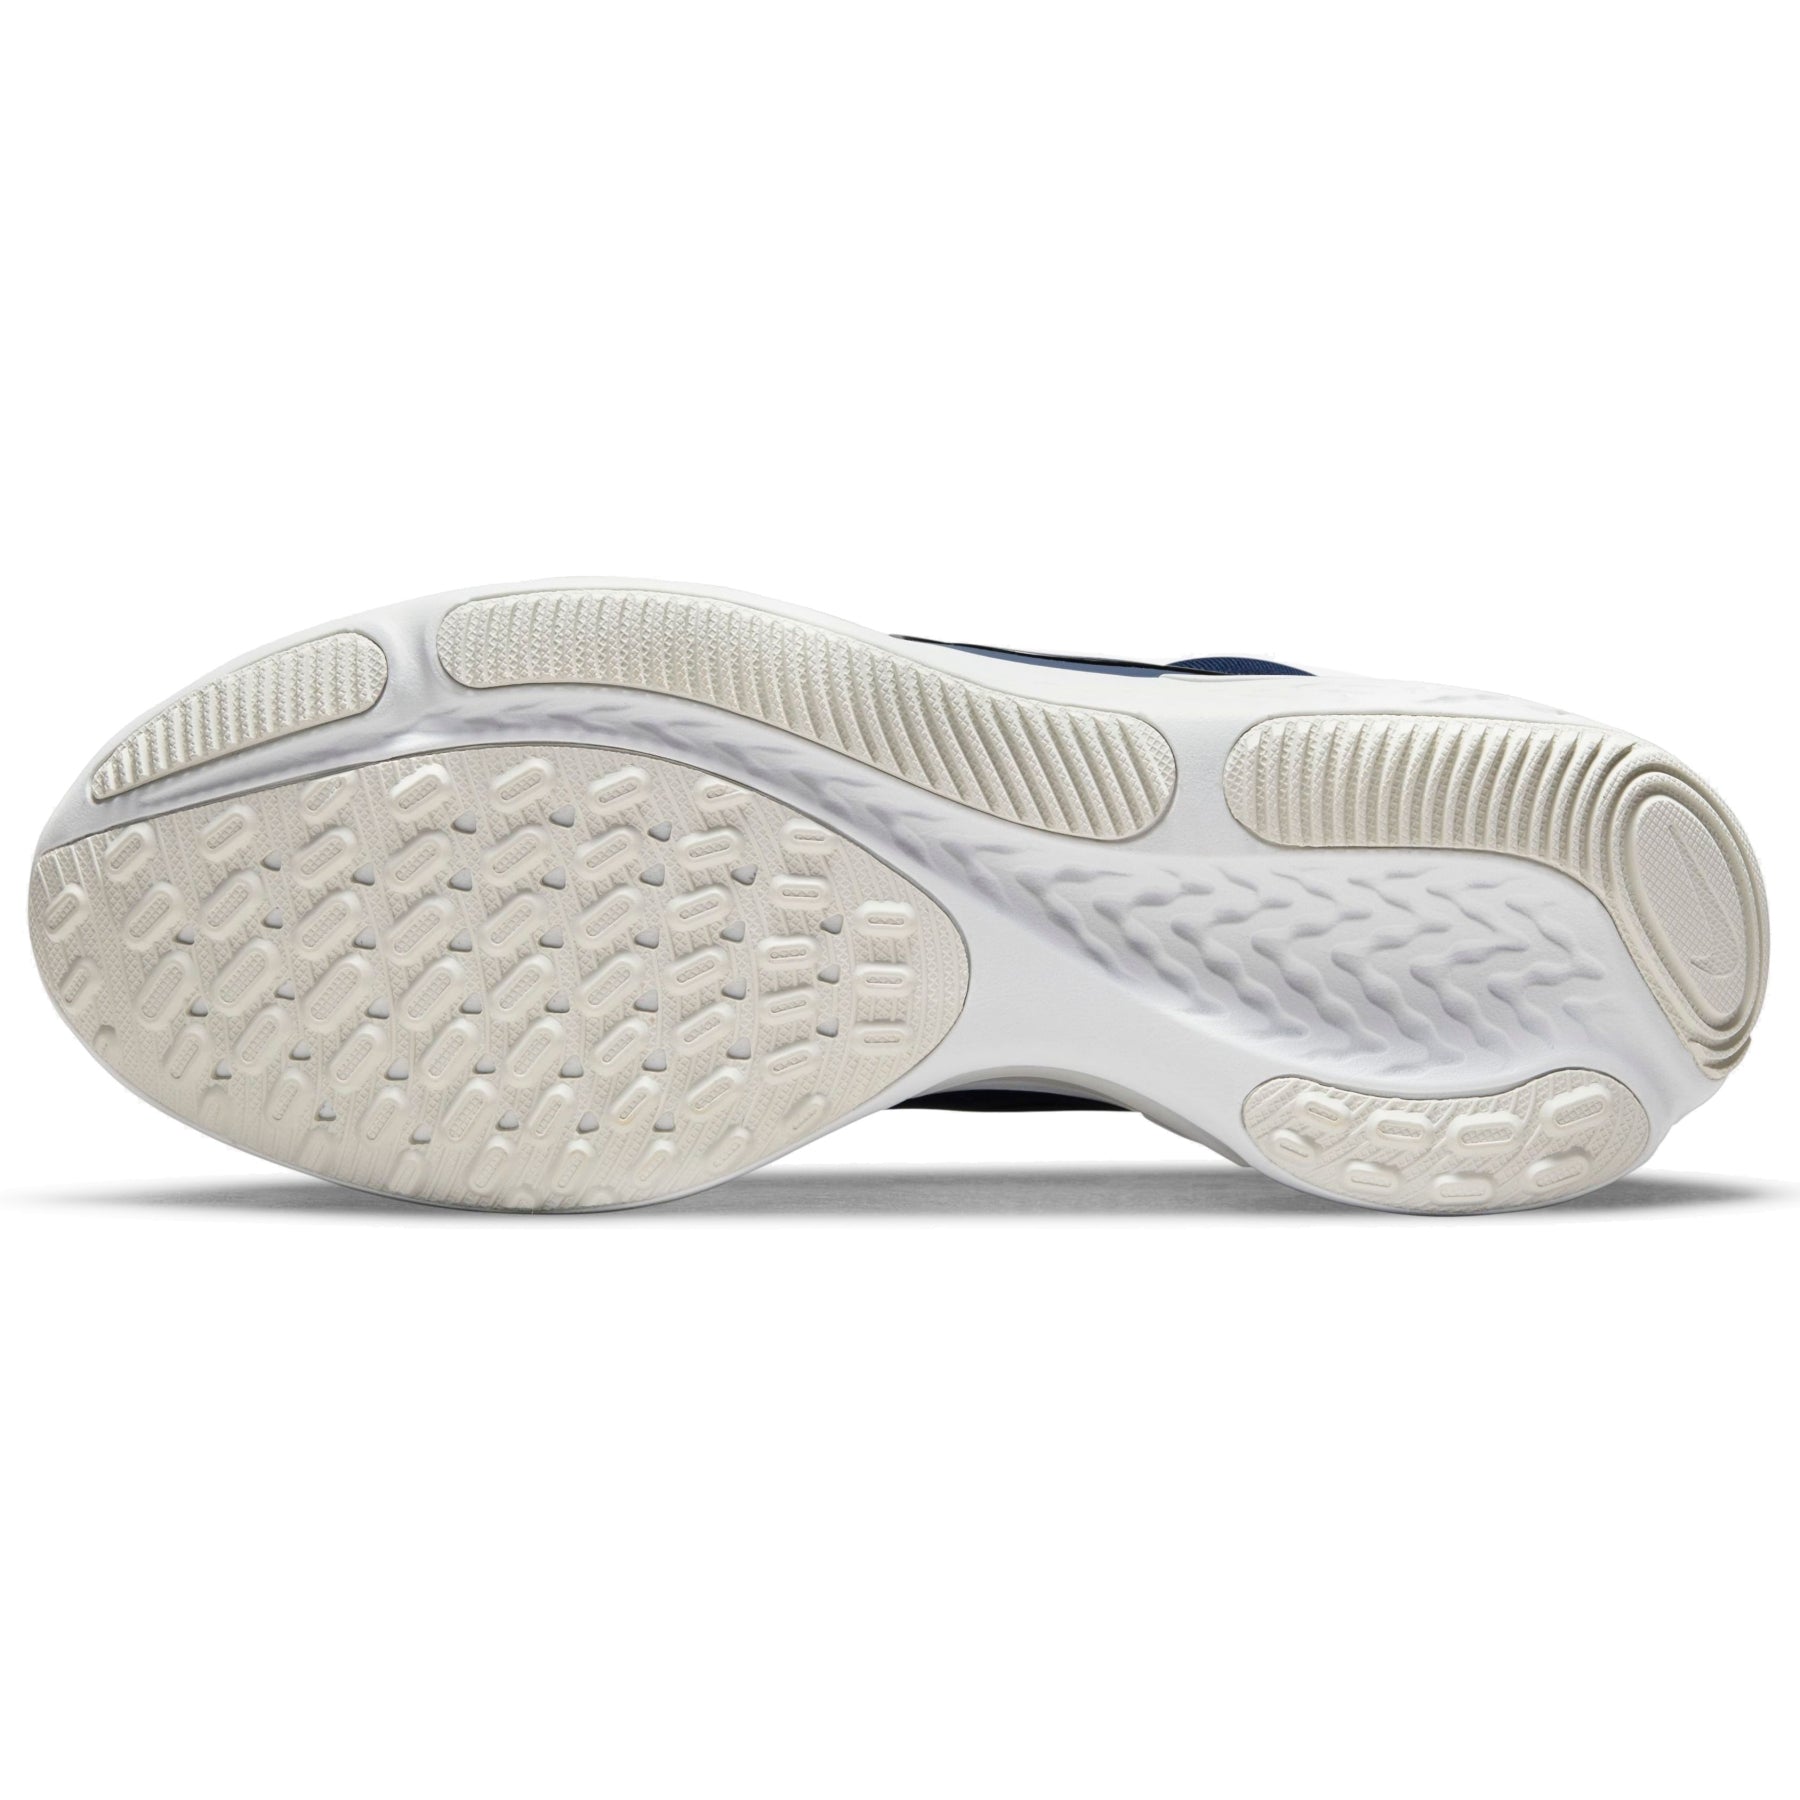 Zapatillas Nike Hombre Running React Miller 2 | CW7121-400